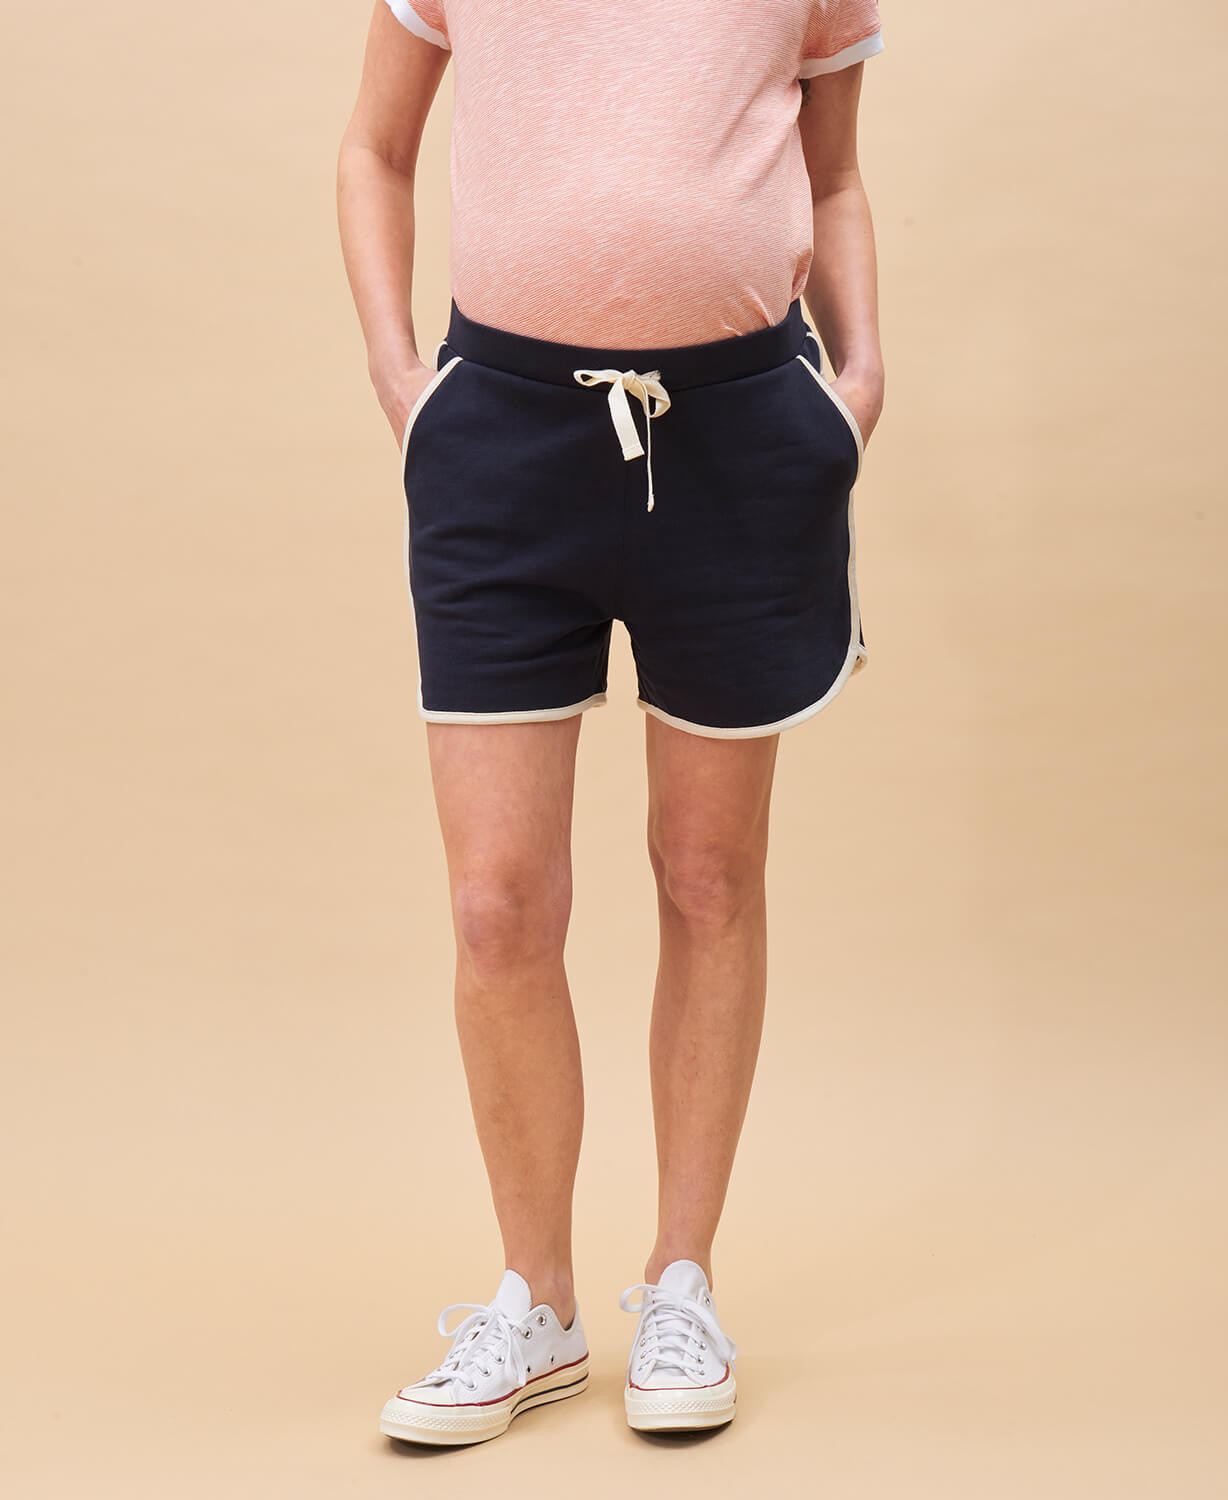 Austin Cotton Pregnancy Short